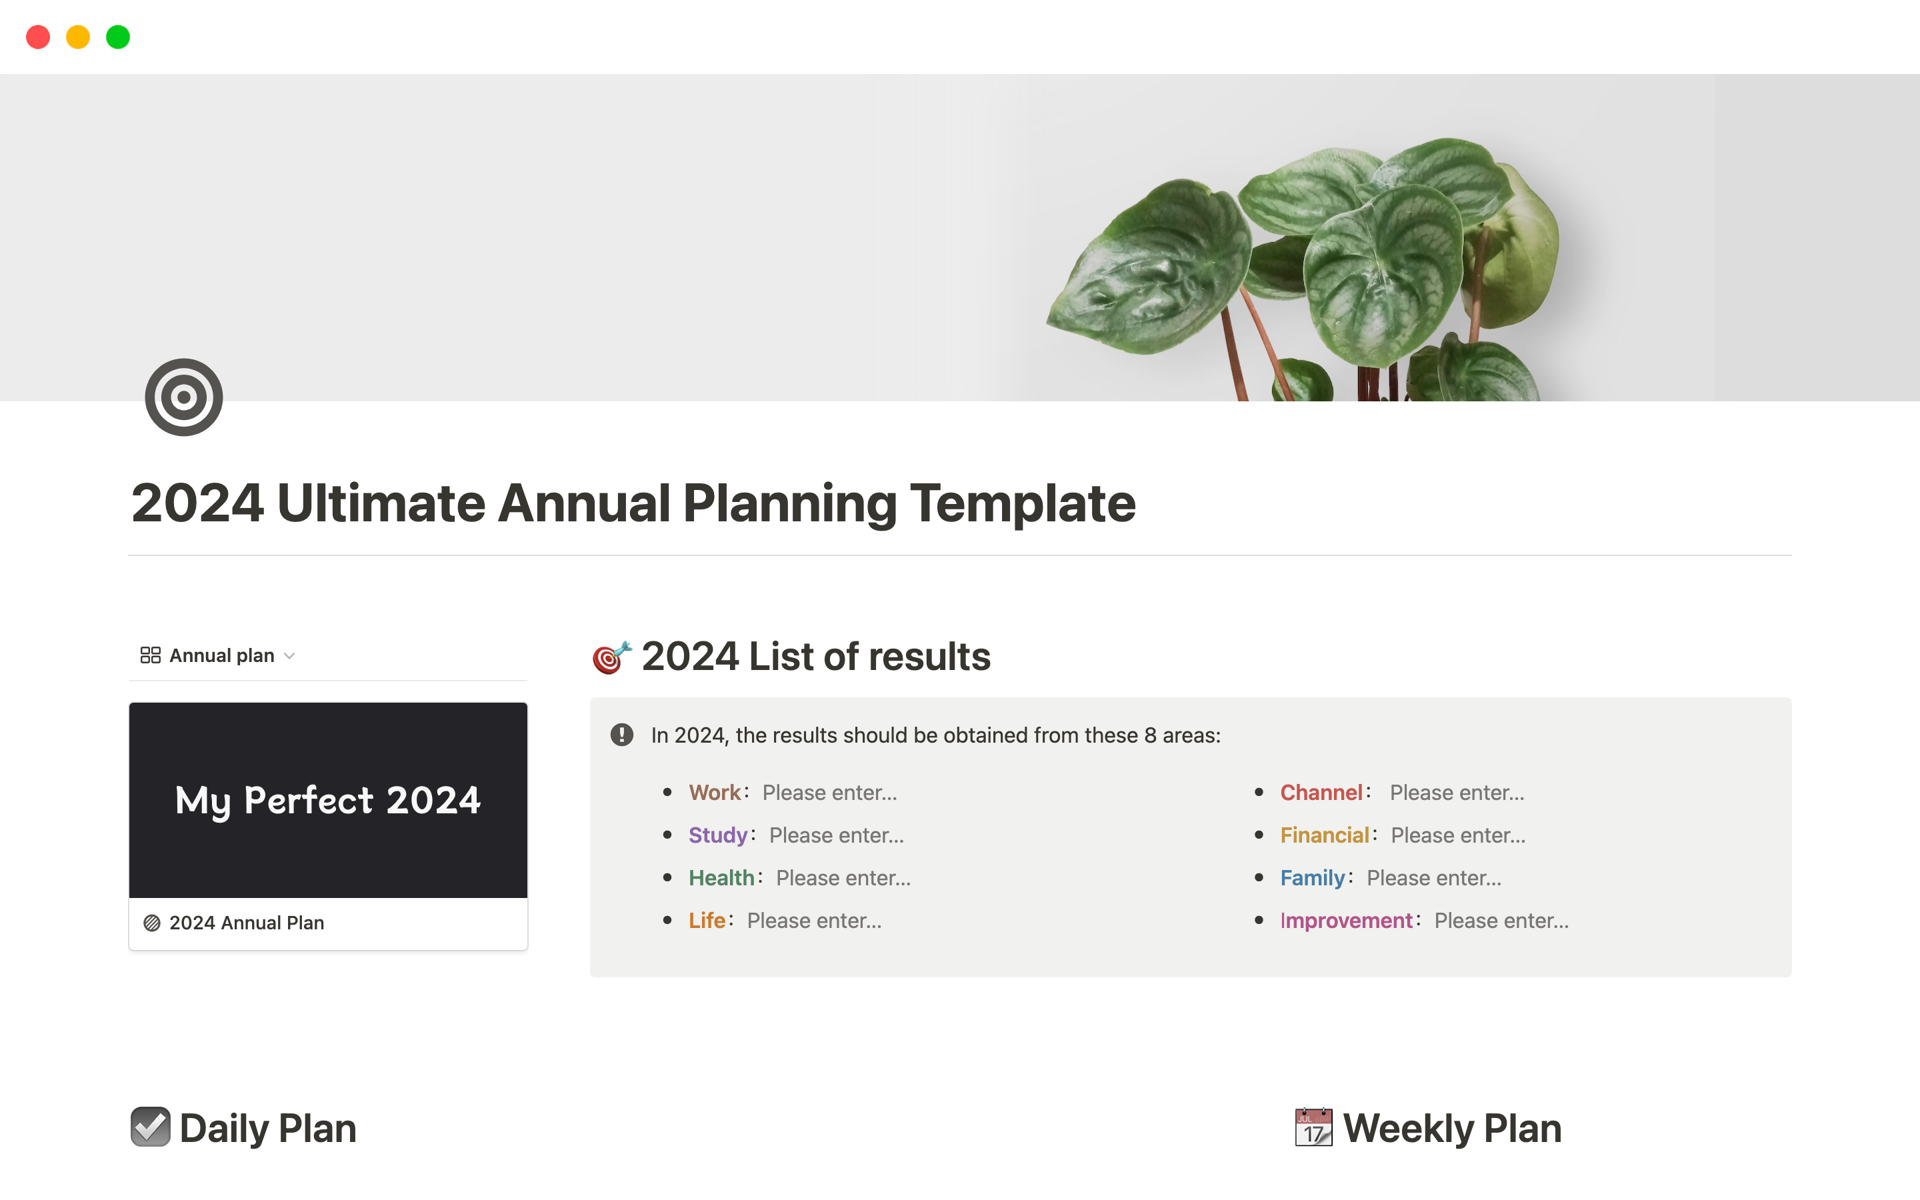 Vista previa de una plantilla para 2024 Ultimate Annual Planning